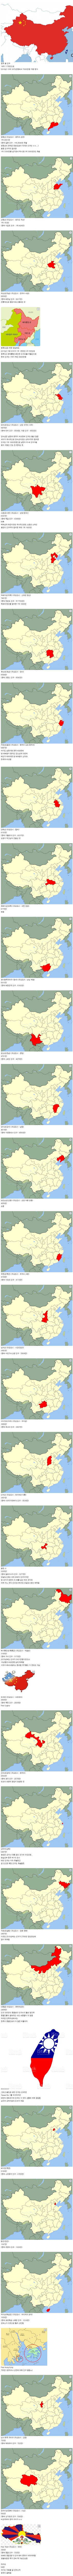 어메이징 중국 인구 체감